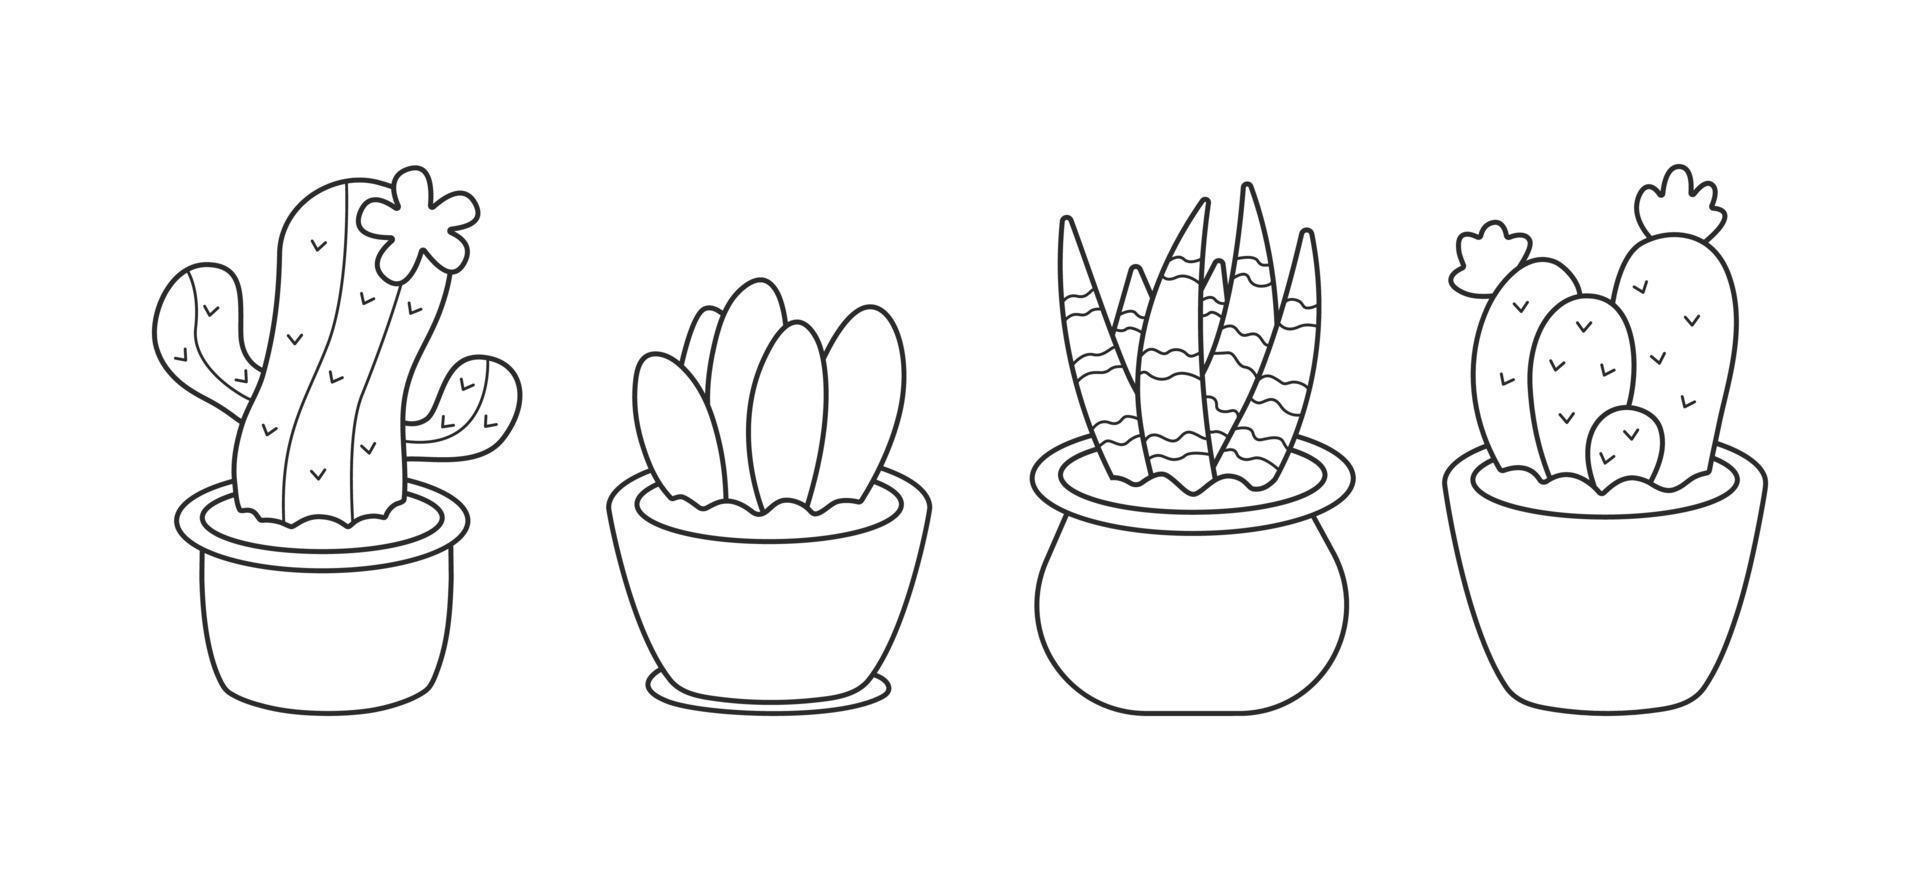 uppsättning av söt kaktusar och hus växter. samling av inlagd växter och kaktusar i svart linjär teckning stil. vektor illustration isolerat på vit bakgrund